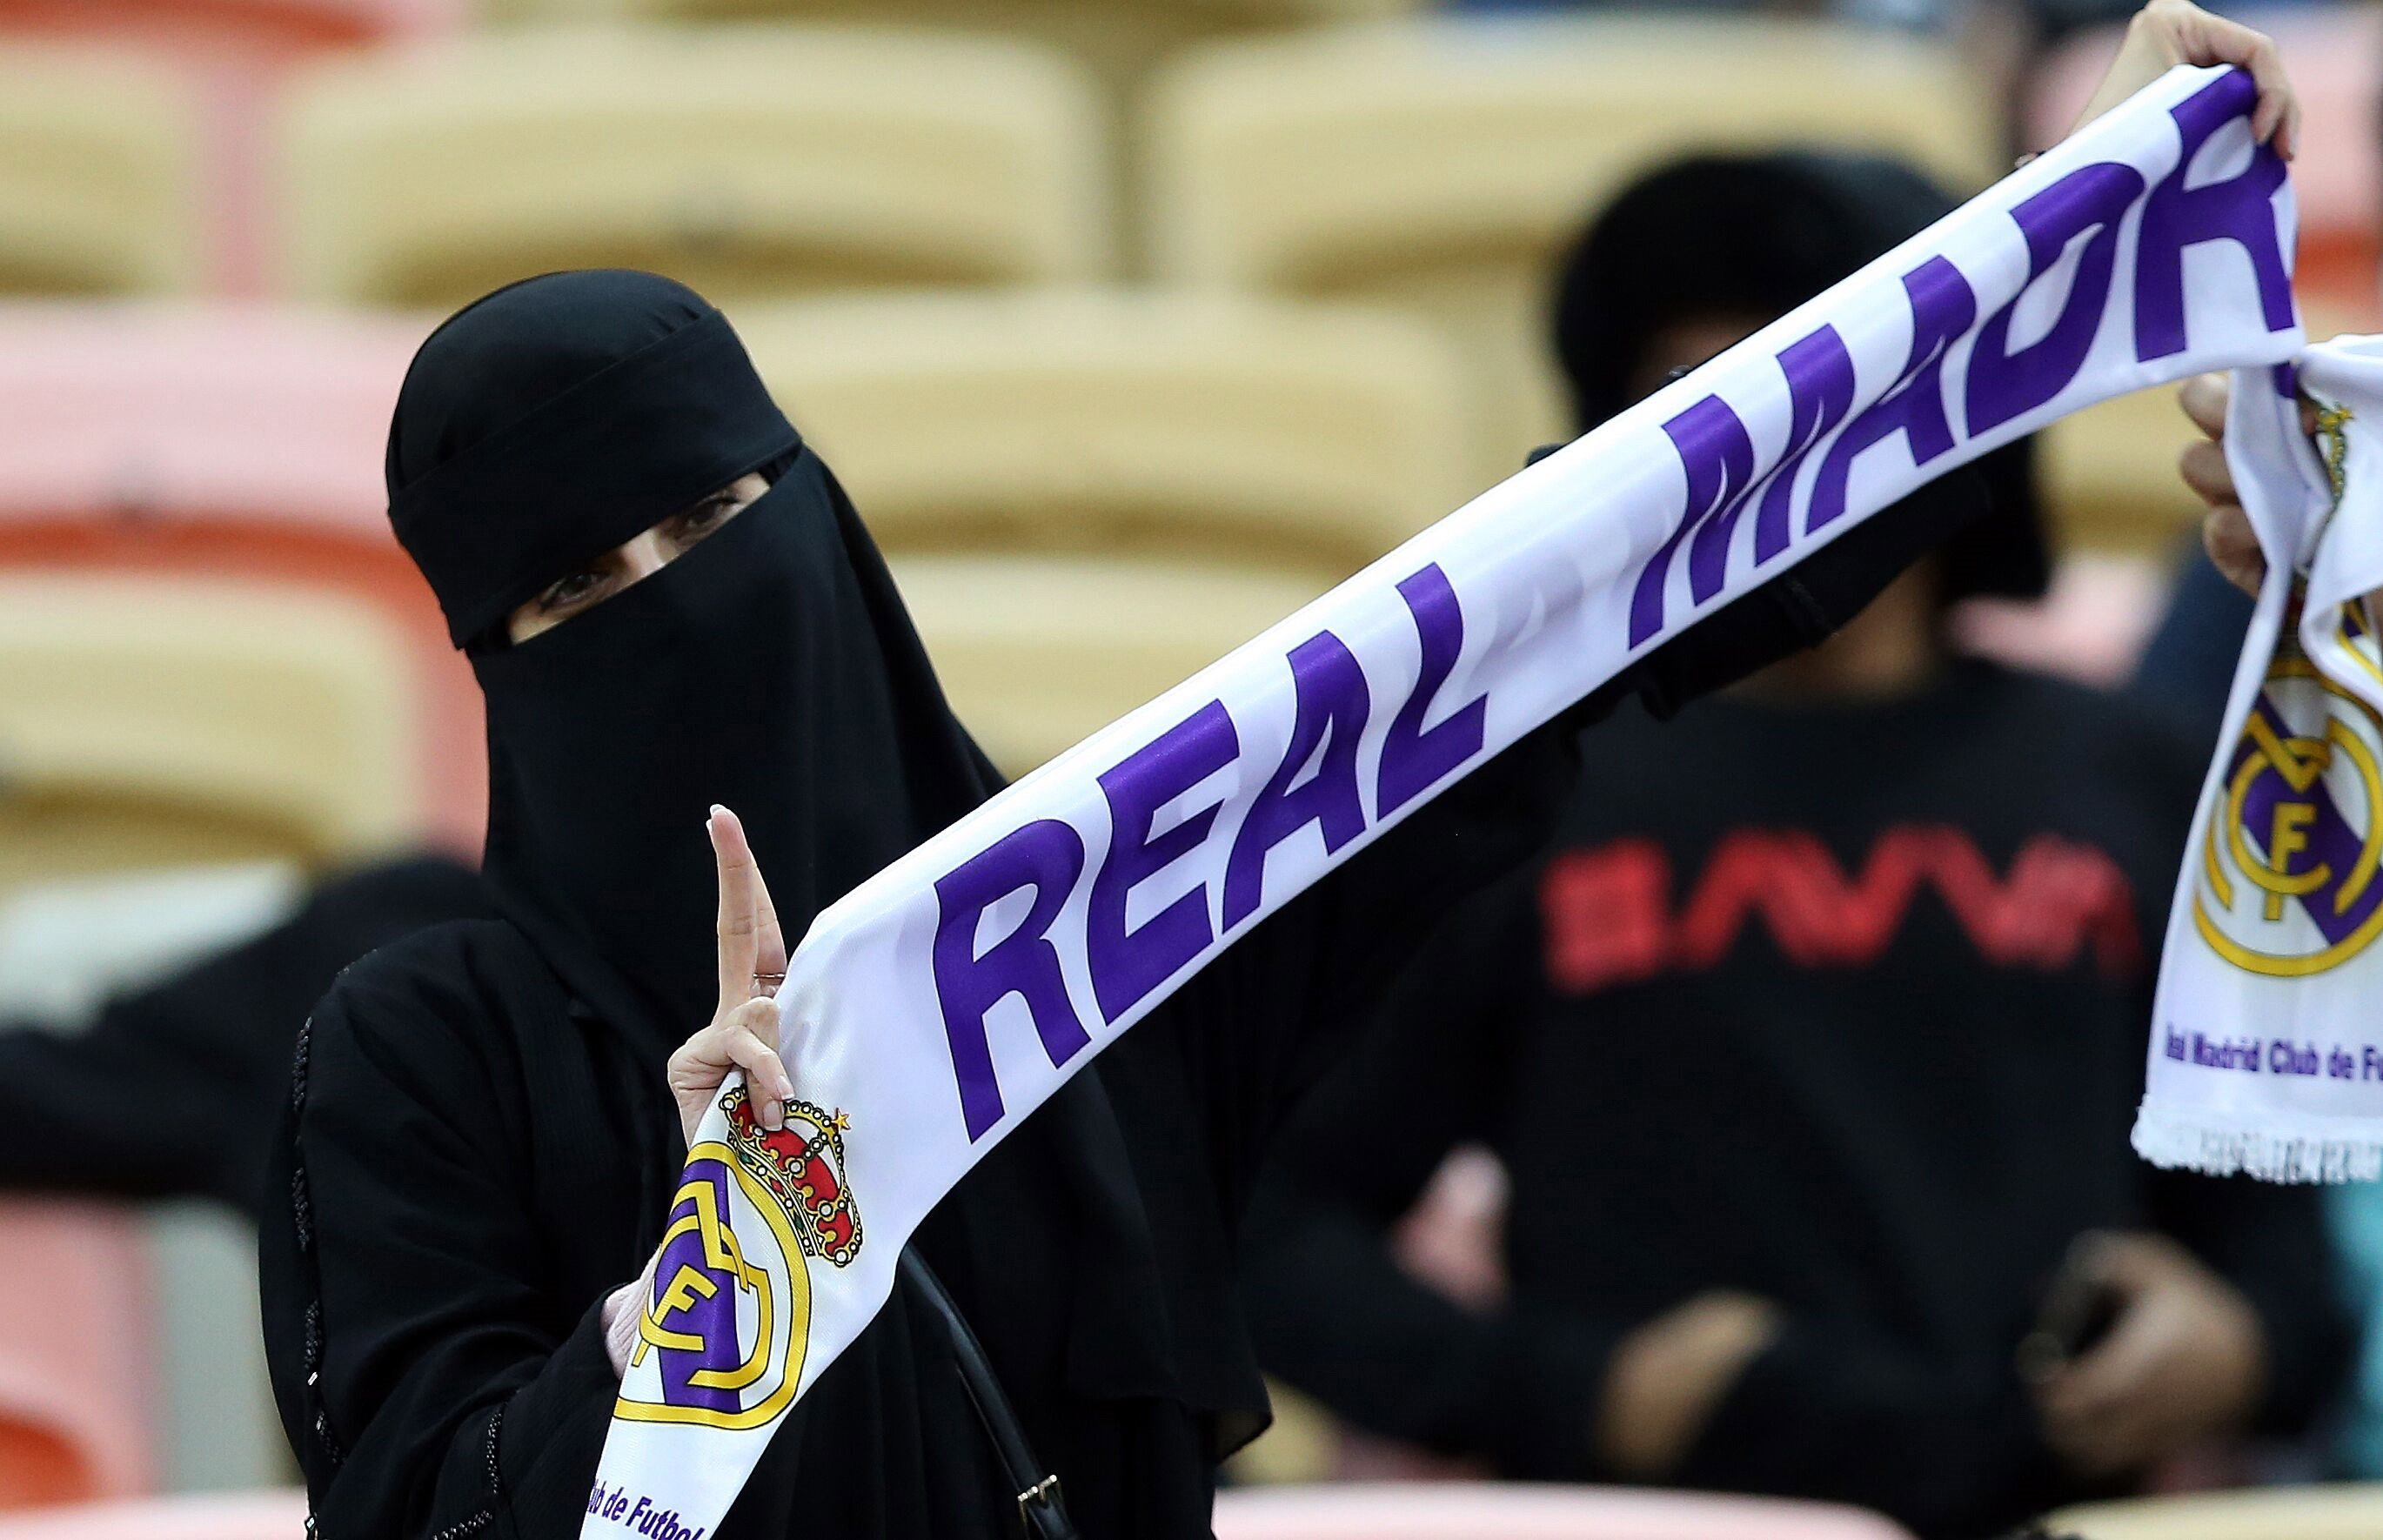 La realidad después de la Supercopa: Arabia Saudí vuelve a apartar a las mujeres